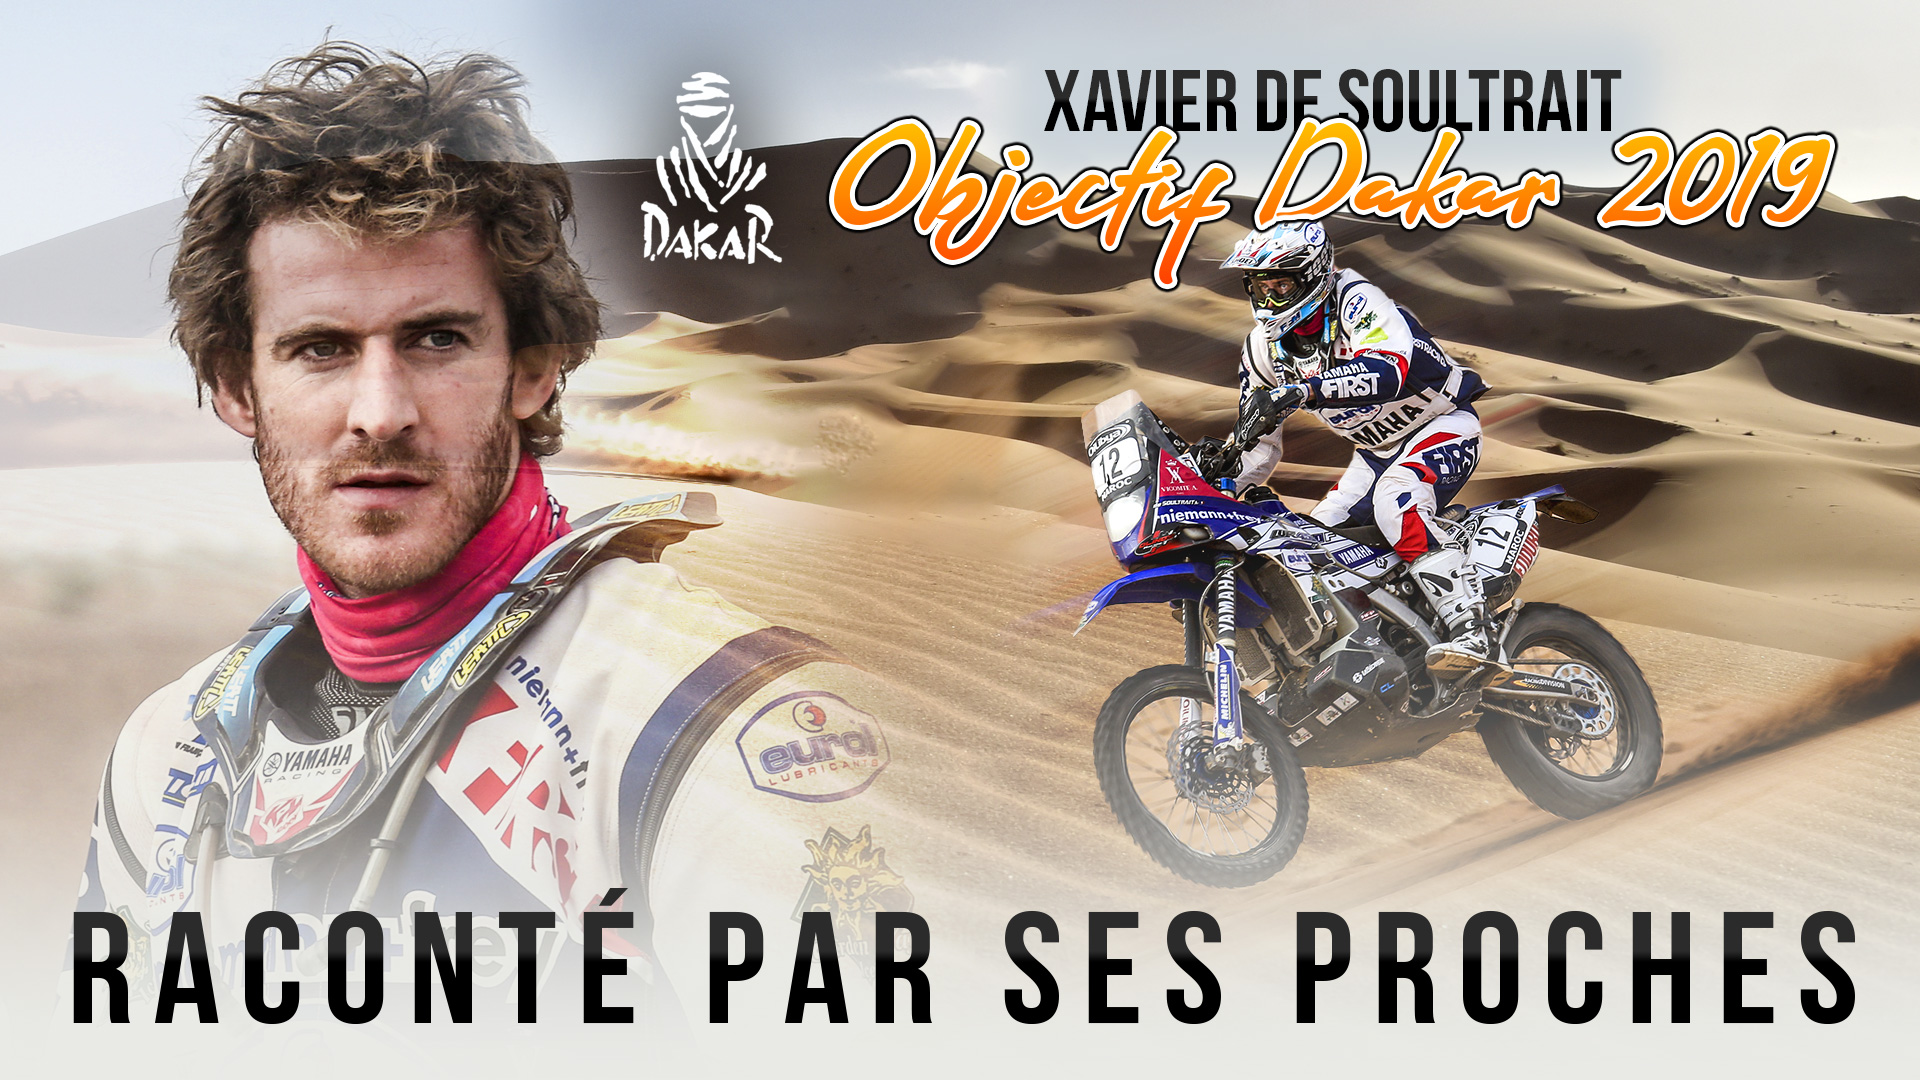 Objectif Dakar 2019 - Xavier de Soultrait raconté par ses proches